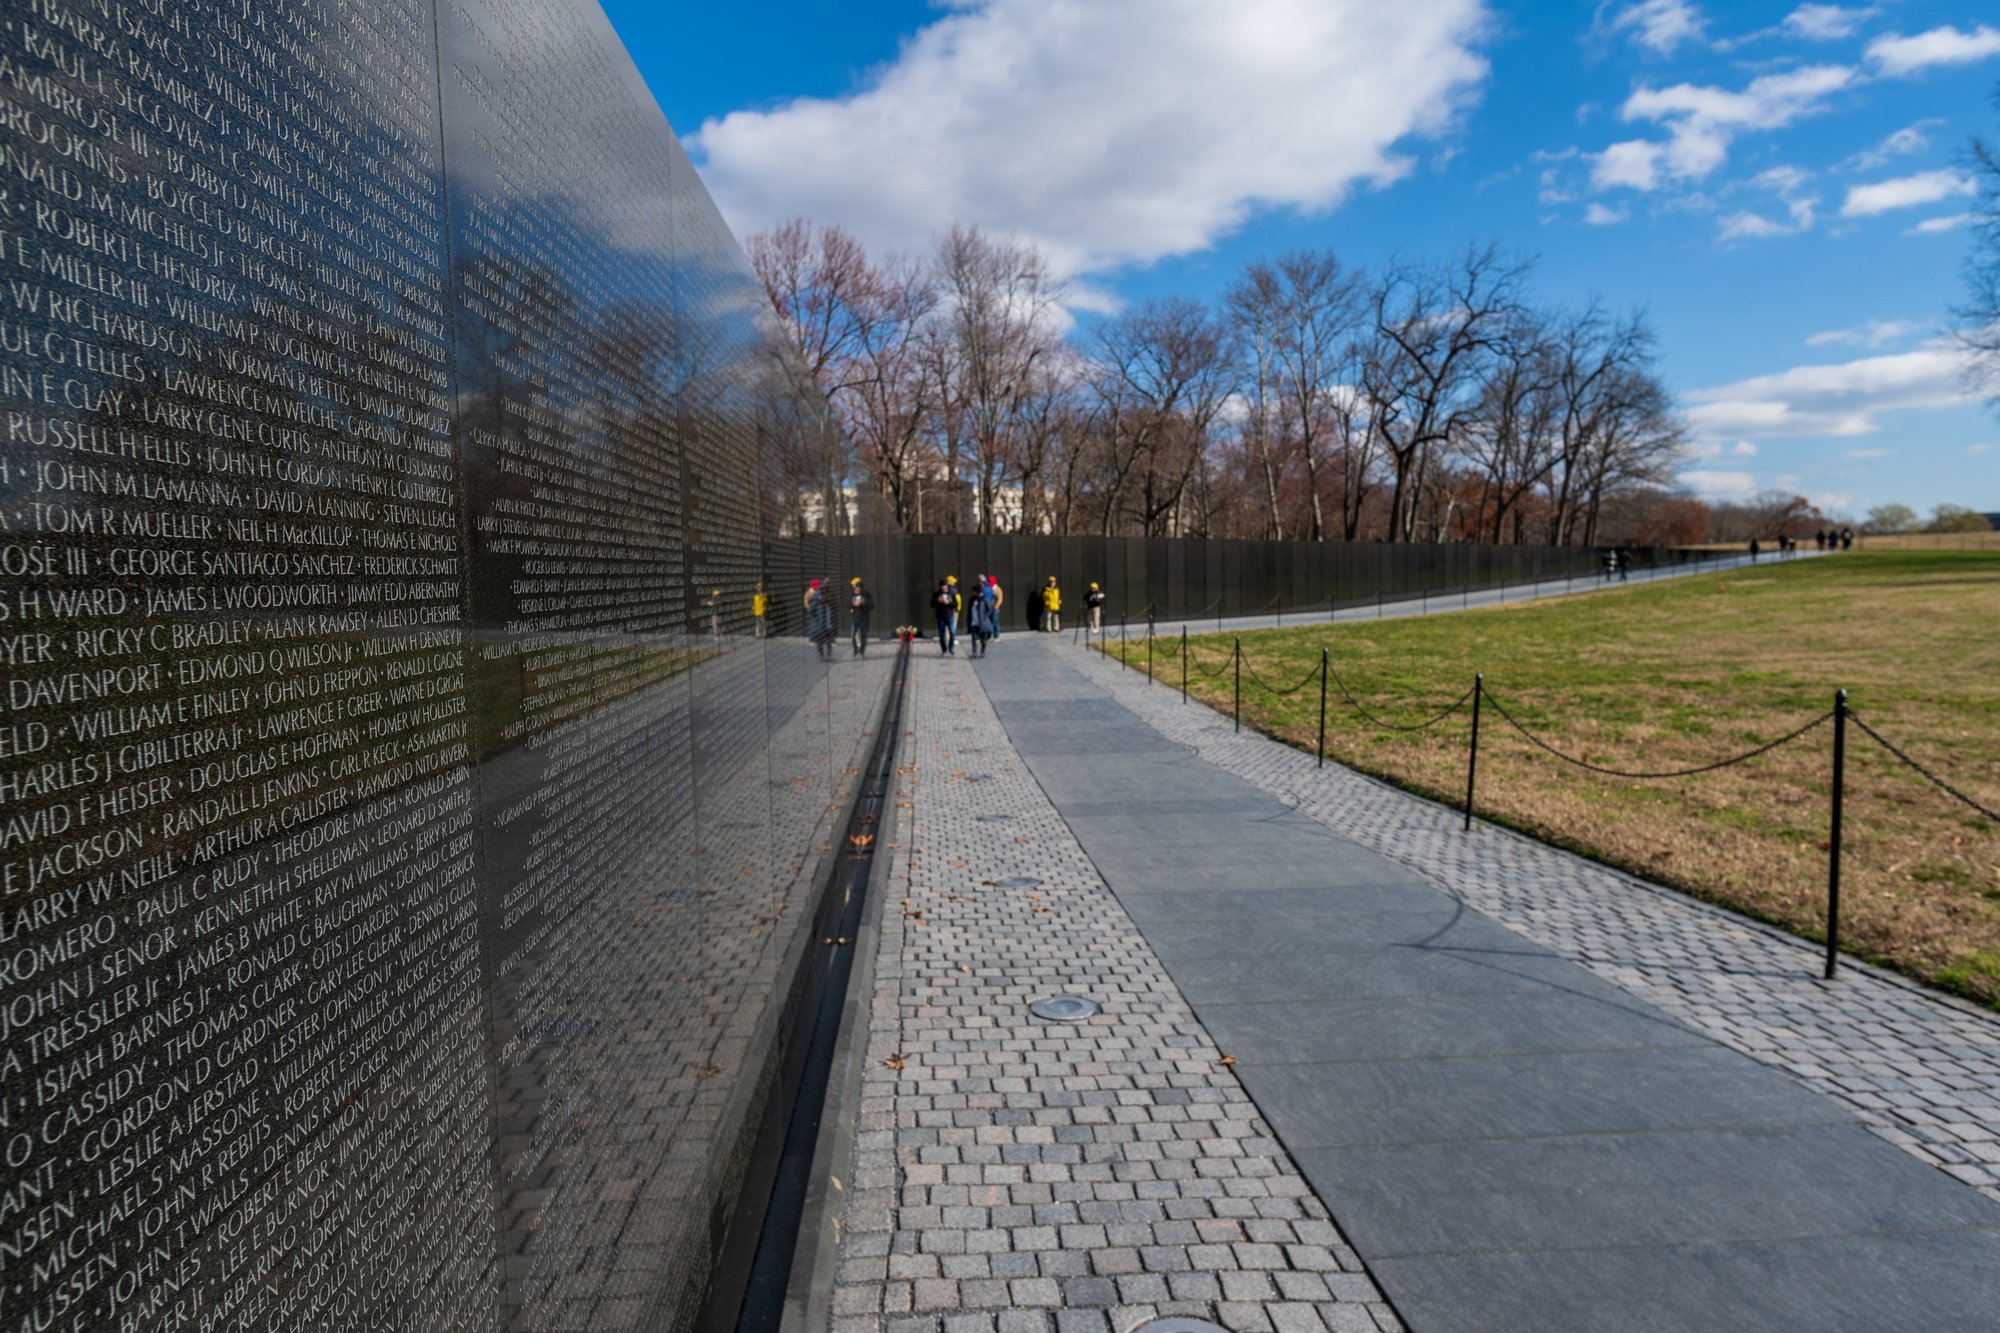 Vietnam Veterans Memorial in Washington D.C. 